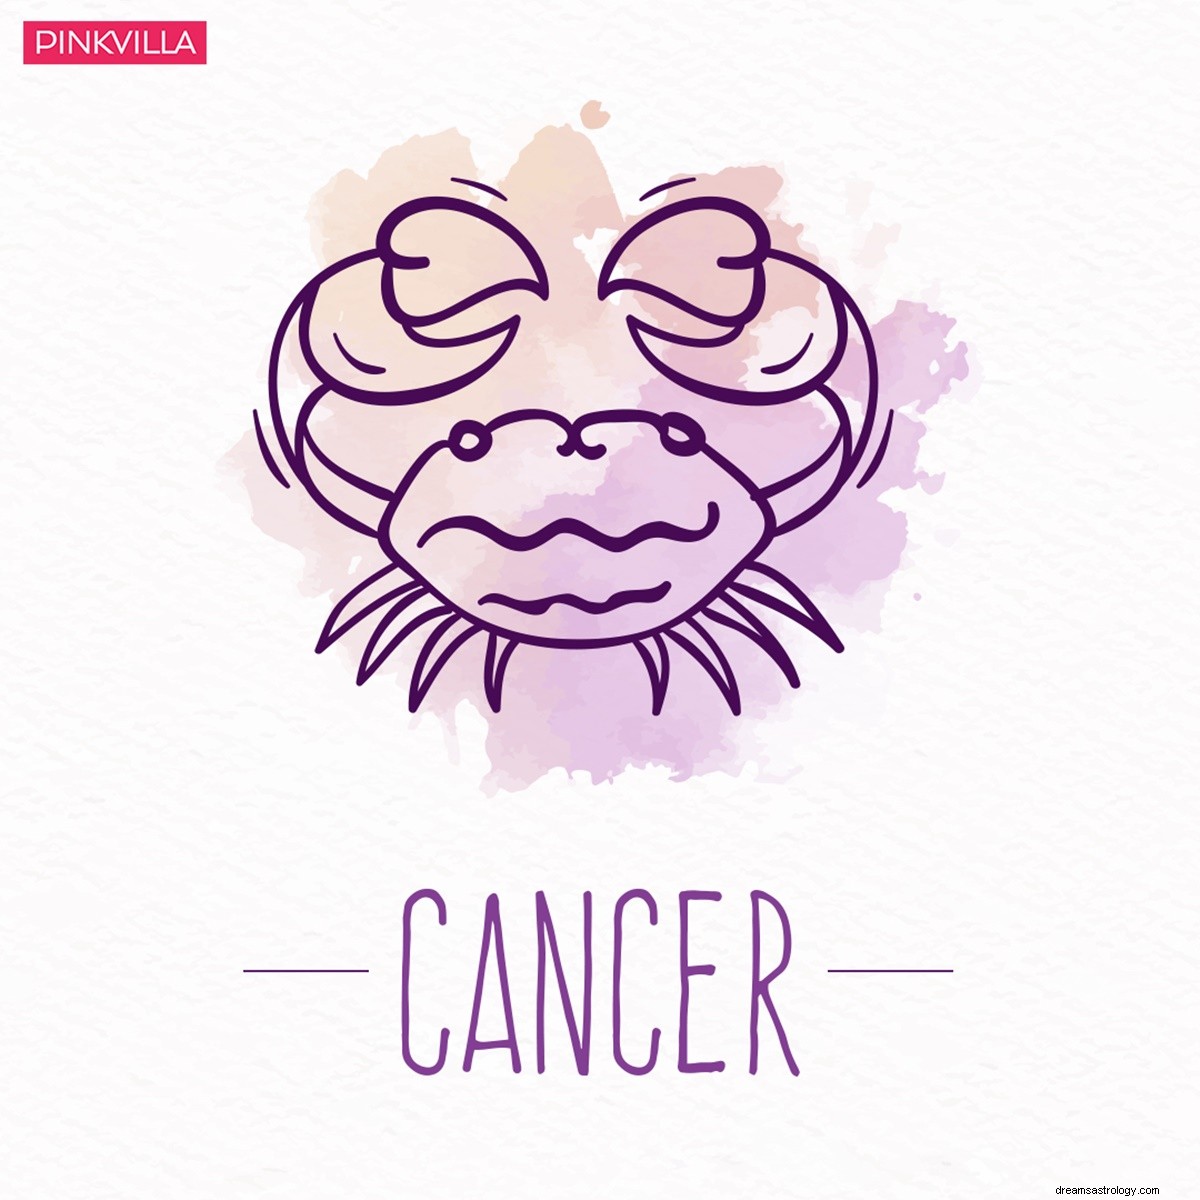 Καρκίνος στην Παρθένο:4 ζώδια που στέλνουν στους αγαπημένους τους τα πιο χαριτωμένα πακέτα φροντίδας όταν δεν είναι καλά 